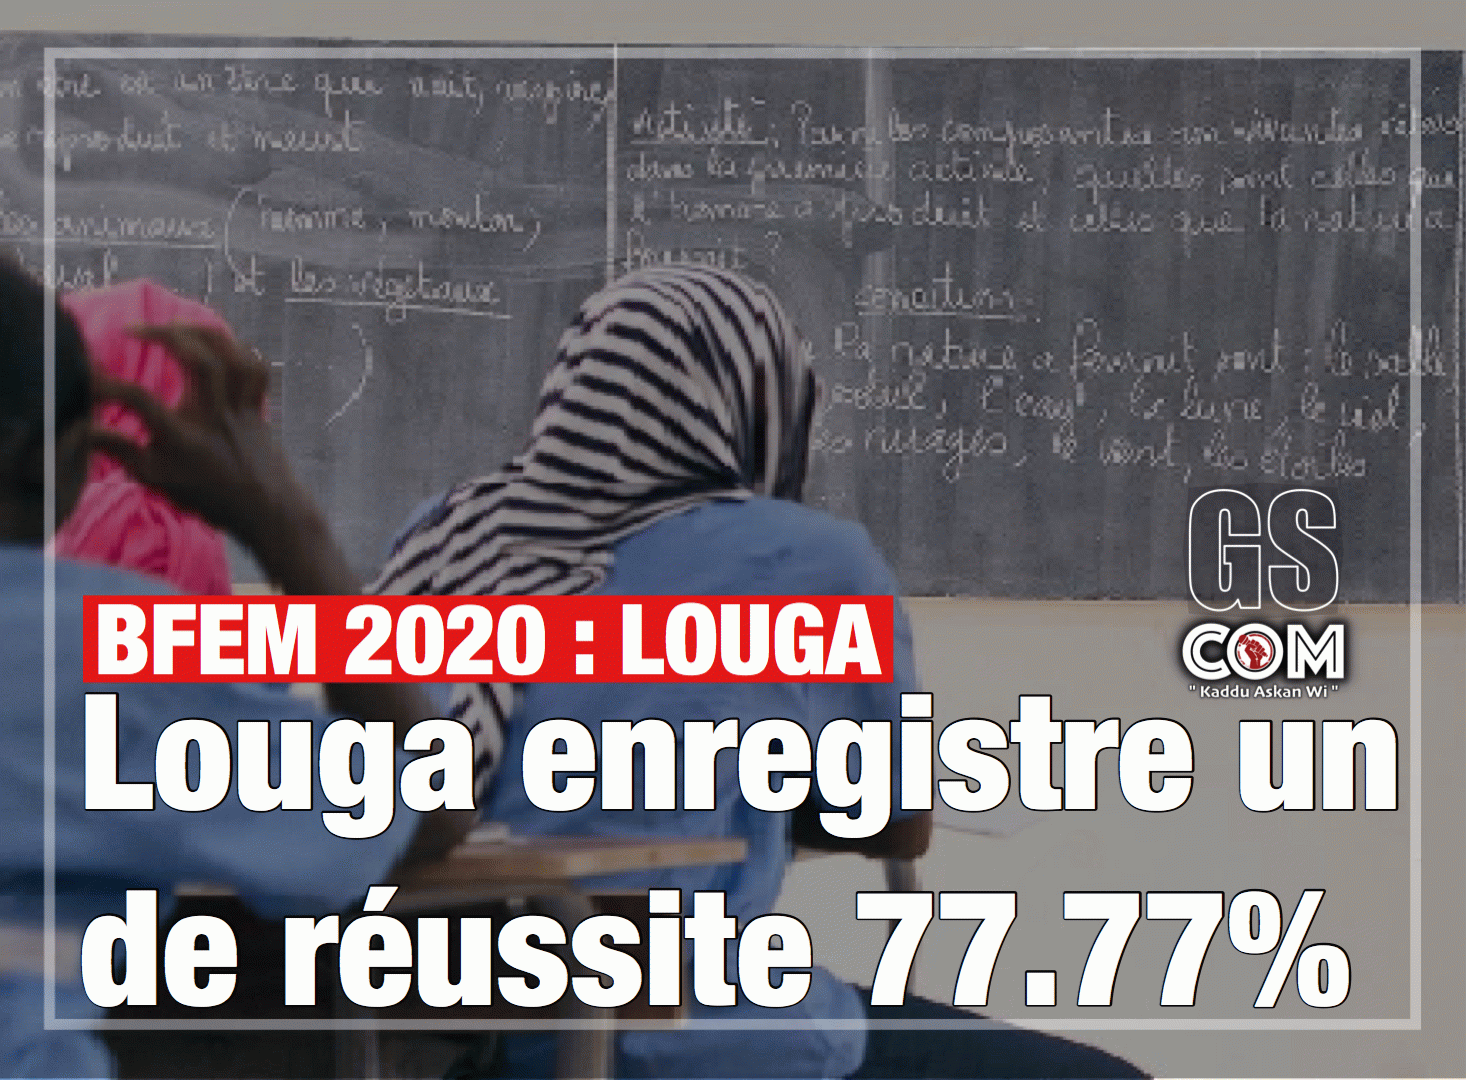 BFEM 2020 : Louga enregistre un de réussite 77.77%